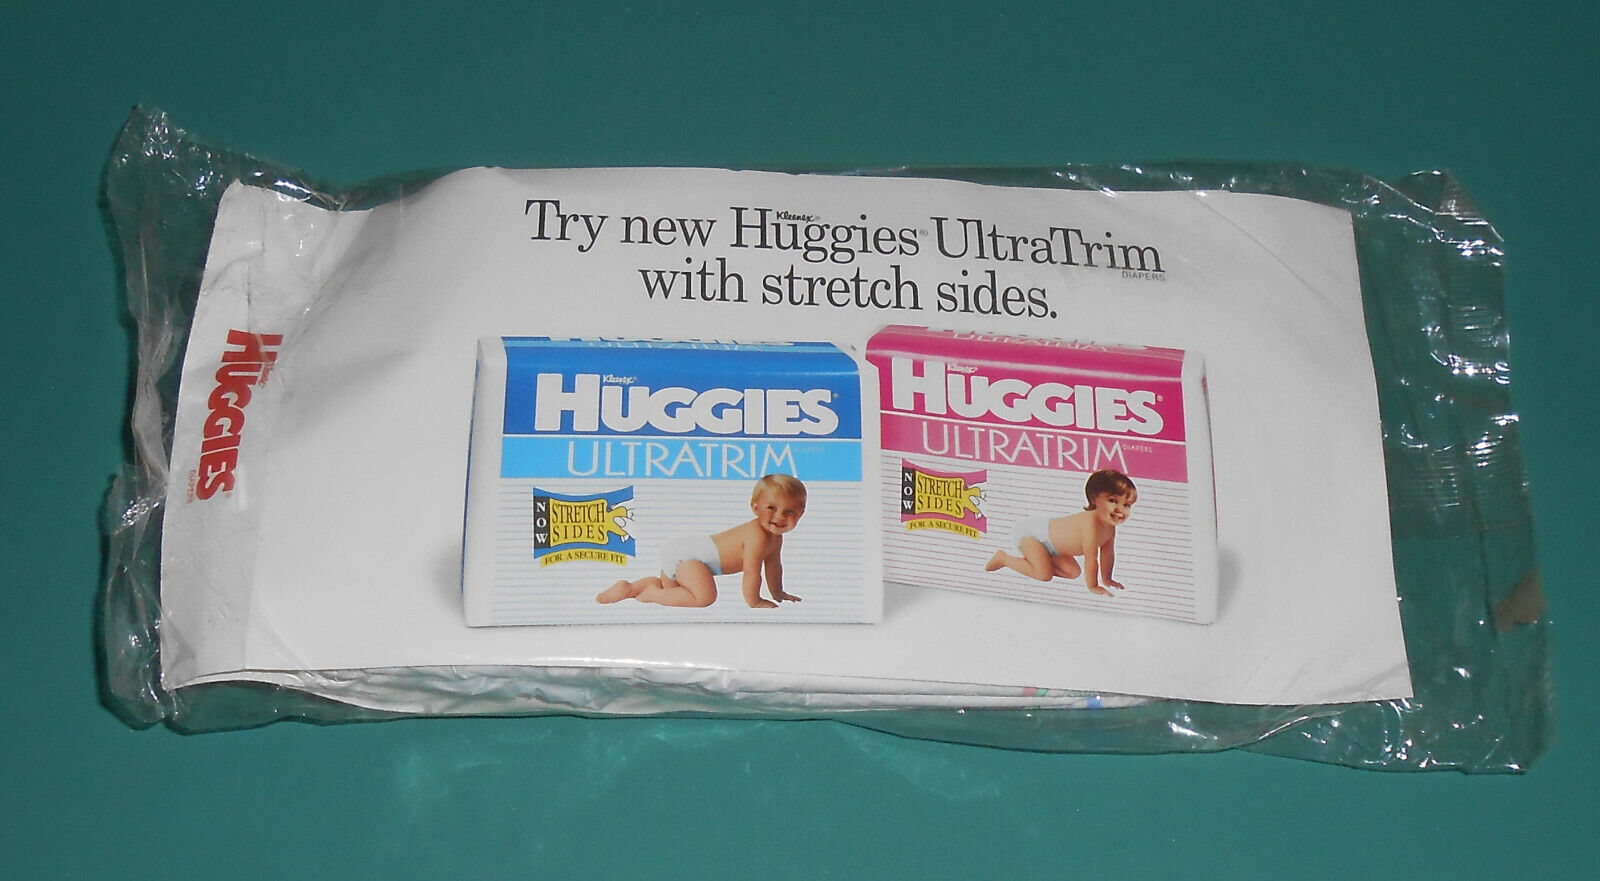 Vintage 1994 Huggies Ultratrim Diapers Sample Package Plastic Boys Girls Size 4